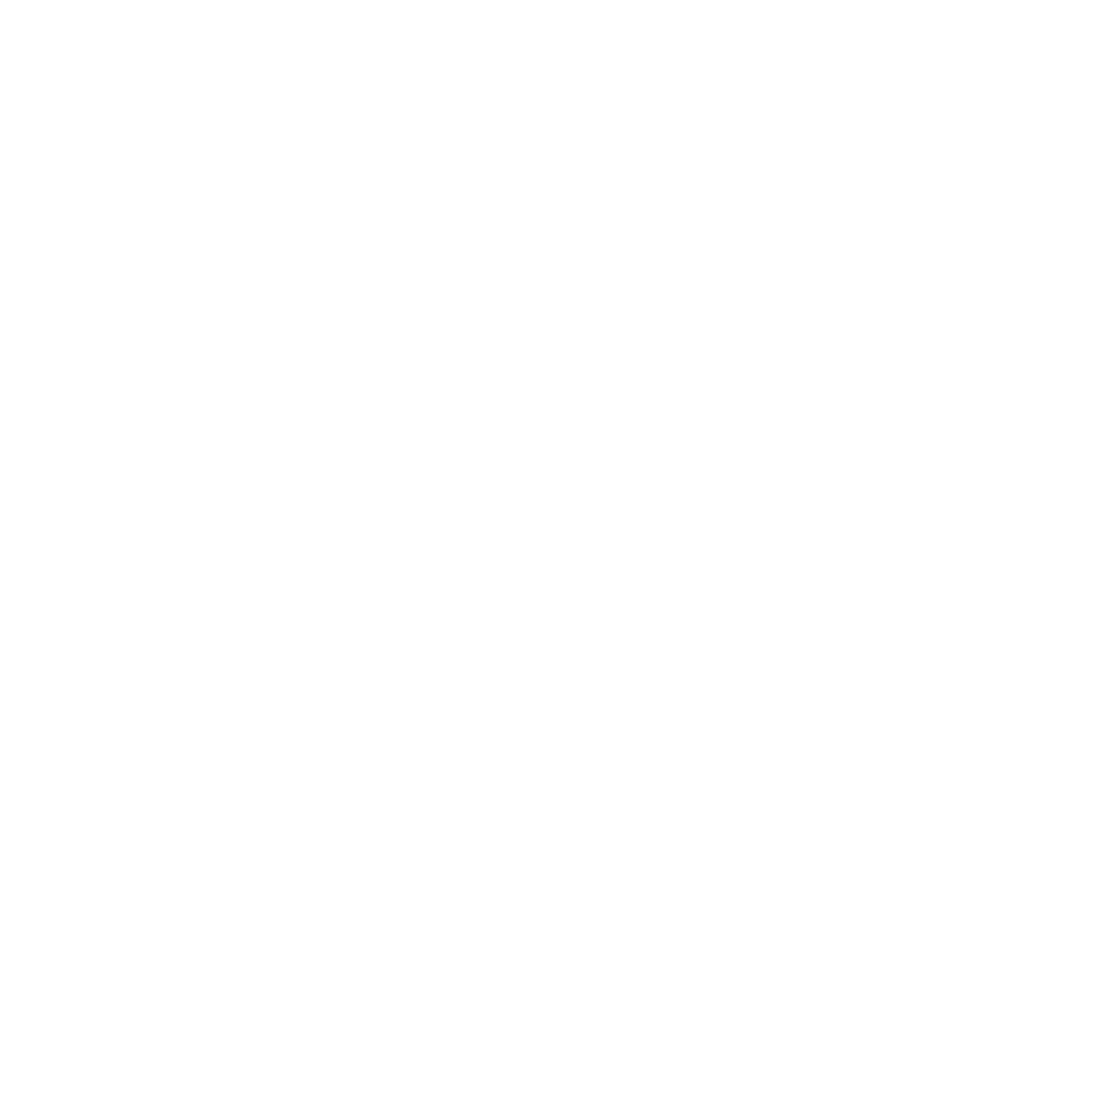 Kefi Yoga